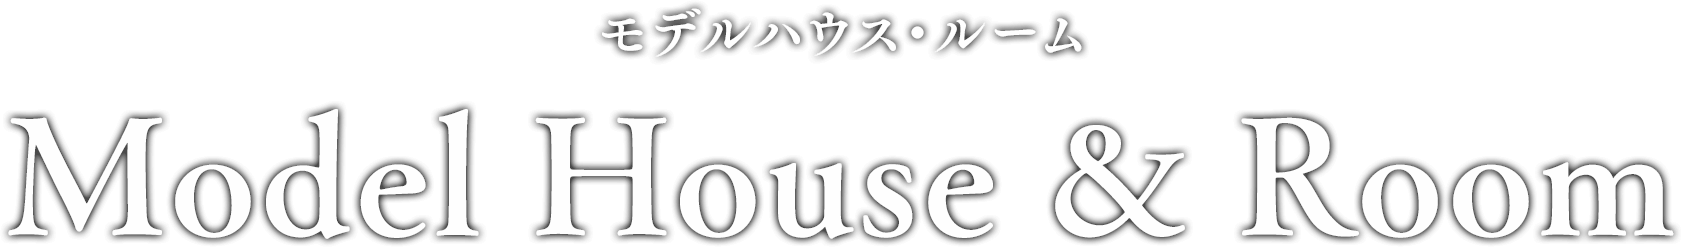 MODEL HOUSE & ROOM